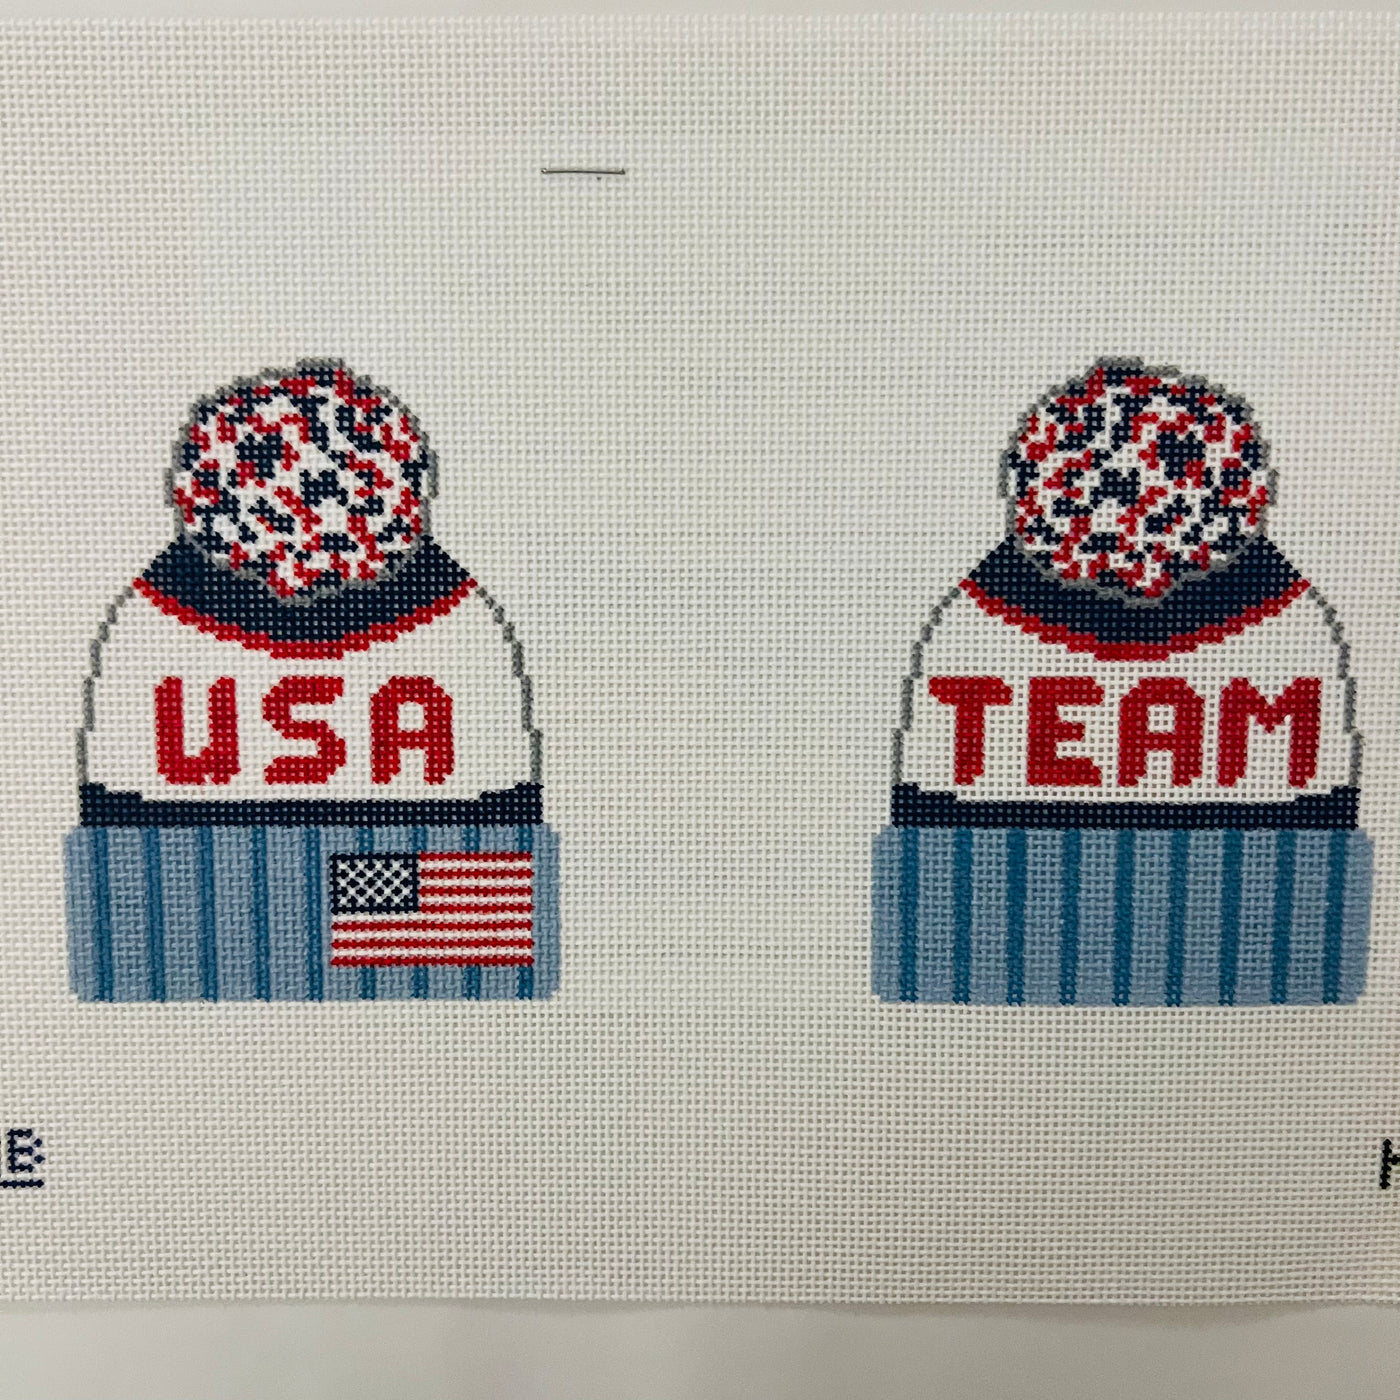 Beanie - Team USA (2-sided) Needlepoint Canvas